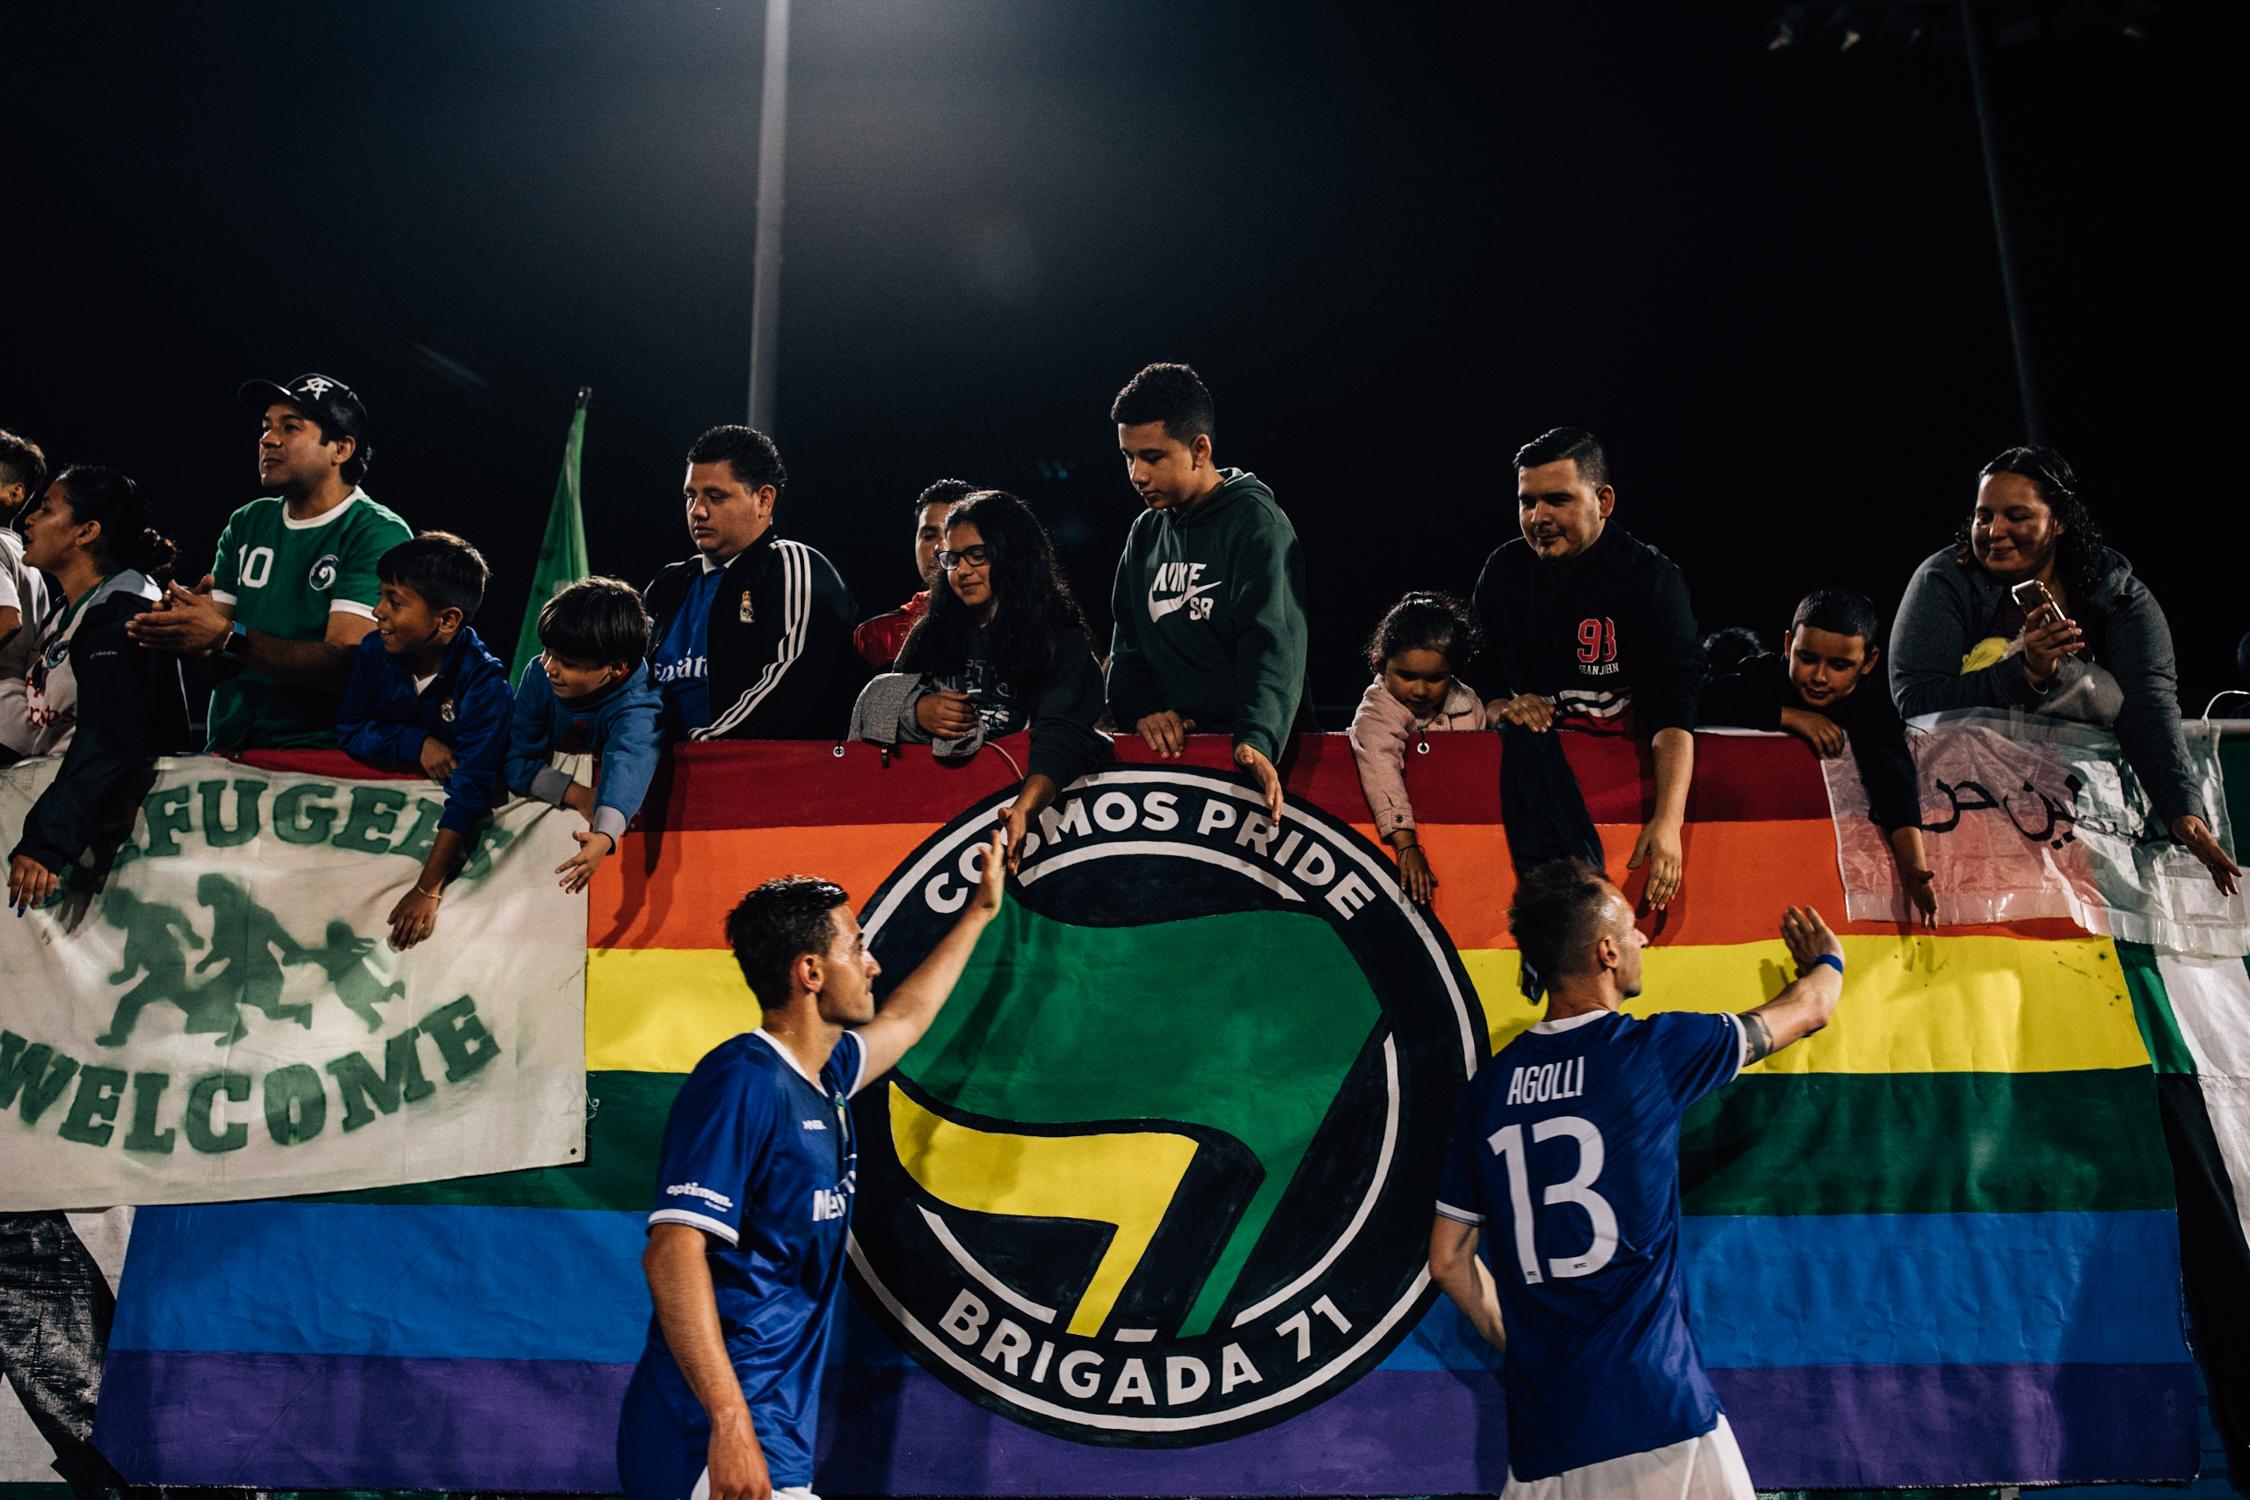 Se Lleva En El Corazón; A Tradition -   Brigada means community, more than soccer     In the...